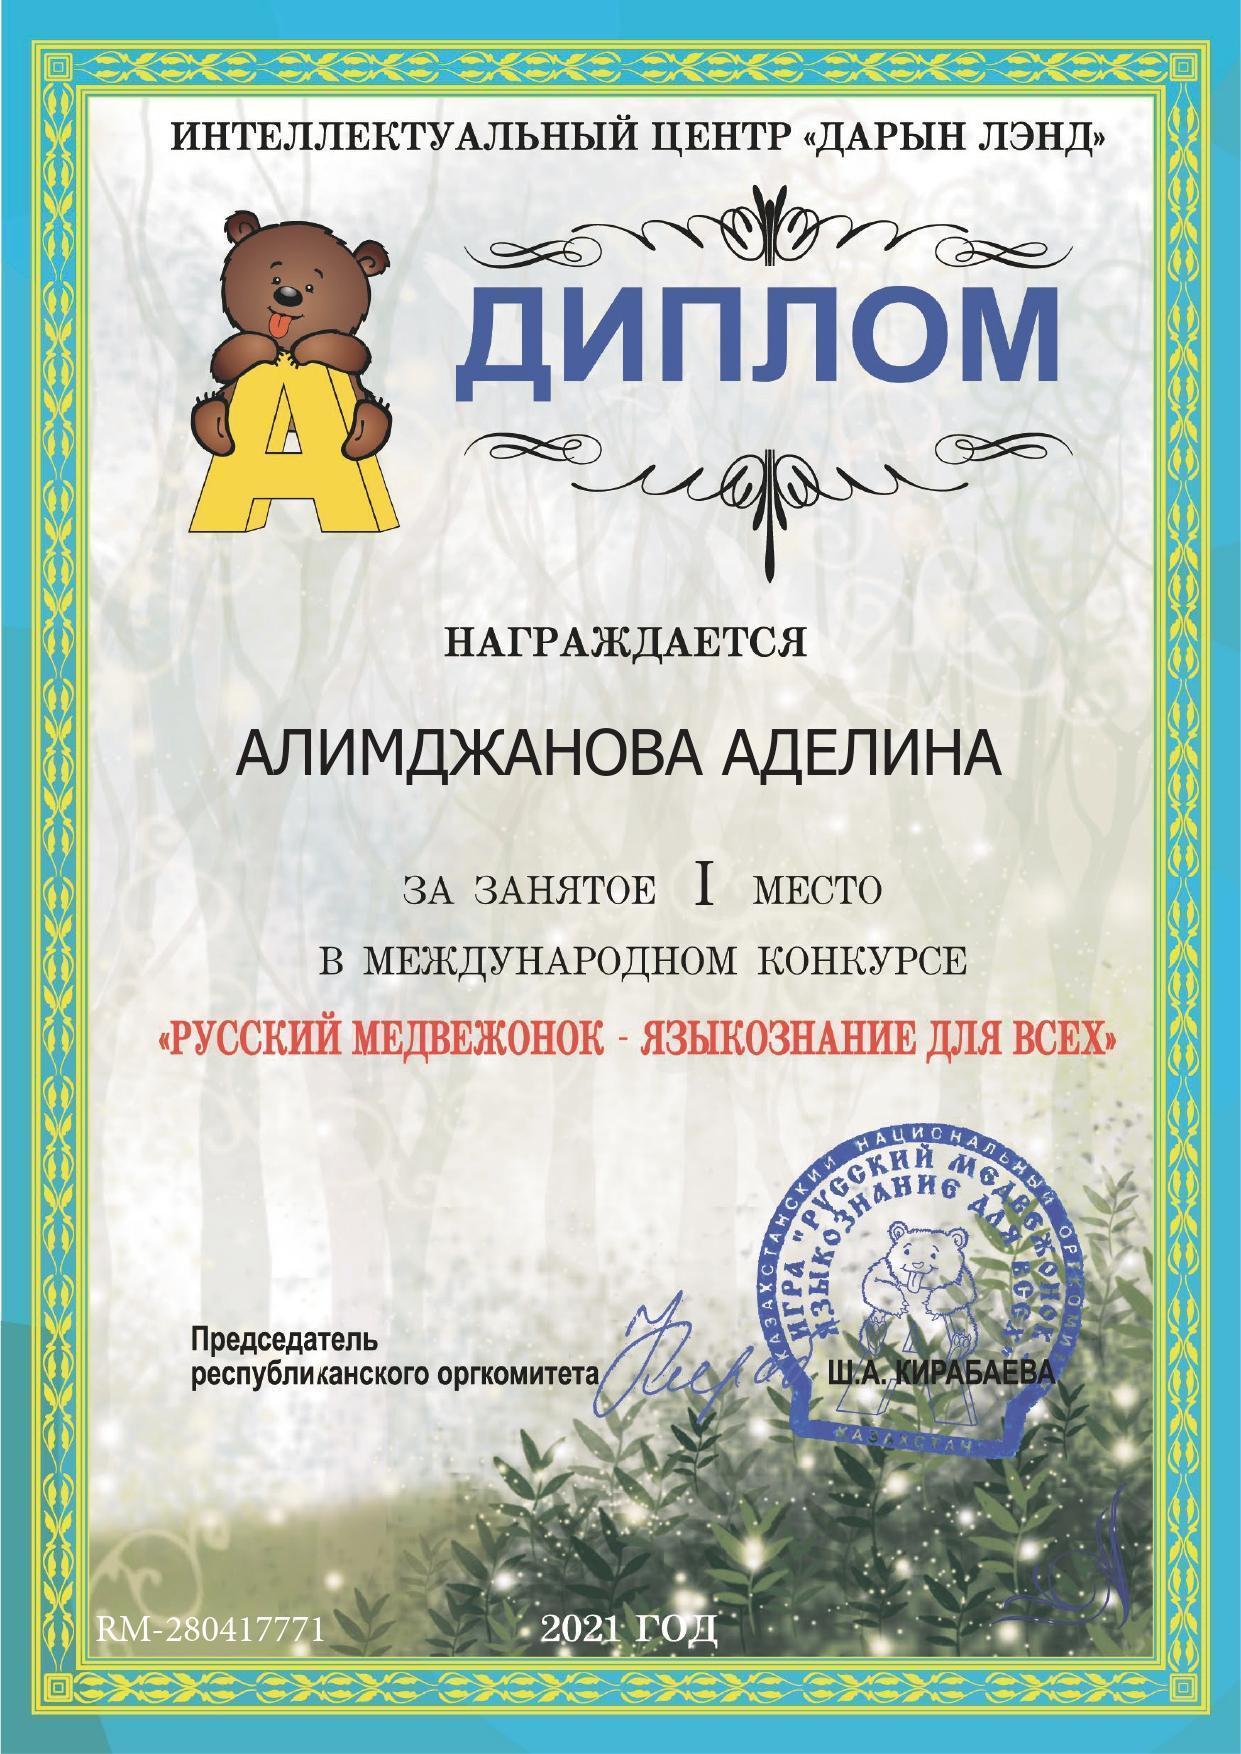 Ученица 2 "Б" класса Алимджанова Аделина заняла І место в международном конкурсе "Русский медвежонок-языкознание для всех"